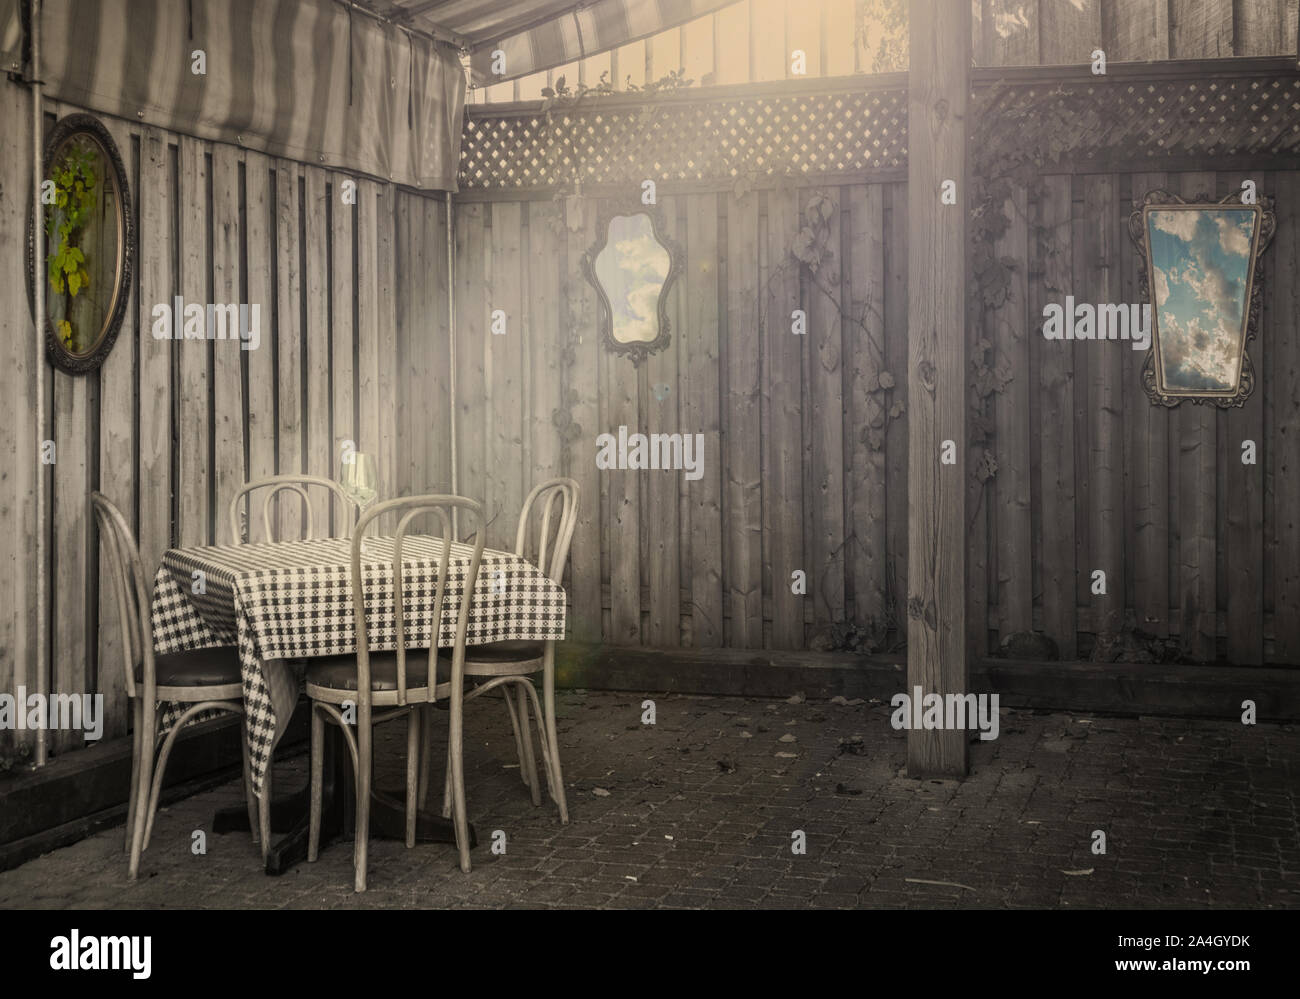 Un bistro, une table et des chaises sur lesquelles tombent les rayons. Des murs en bois, des miroirs anciens et sur les murs. Monochrome. Banque D'Images